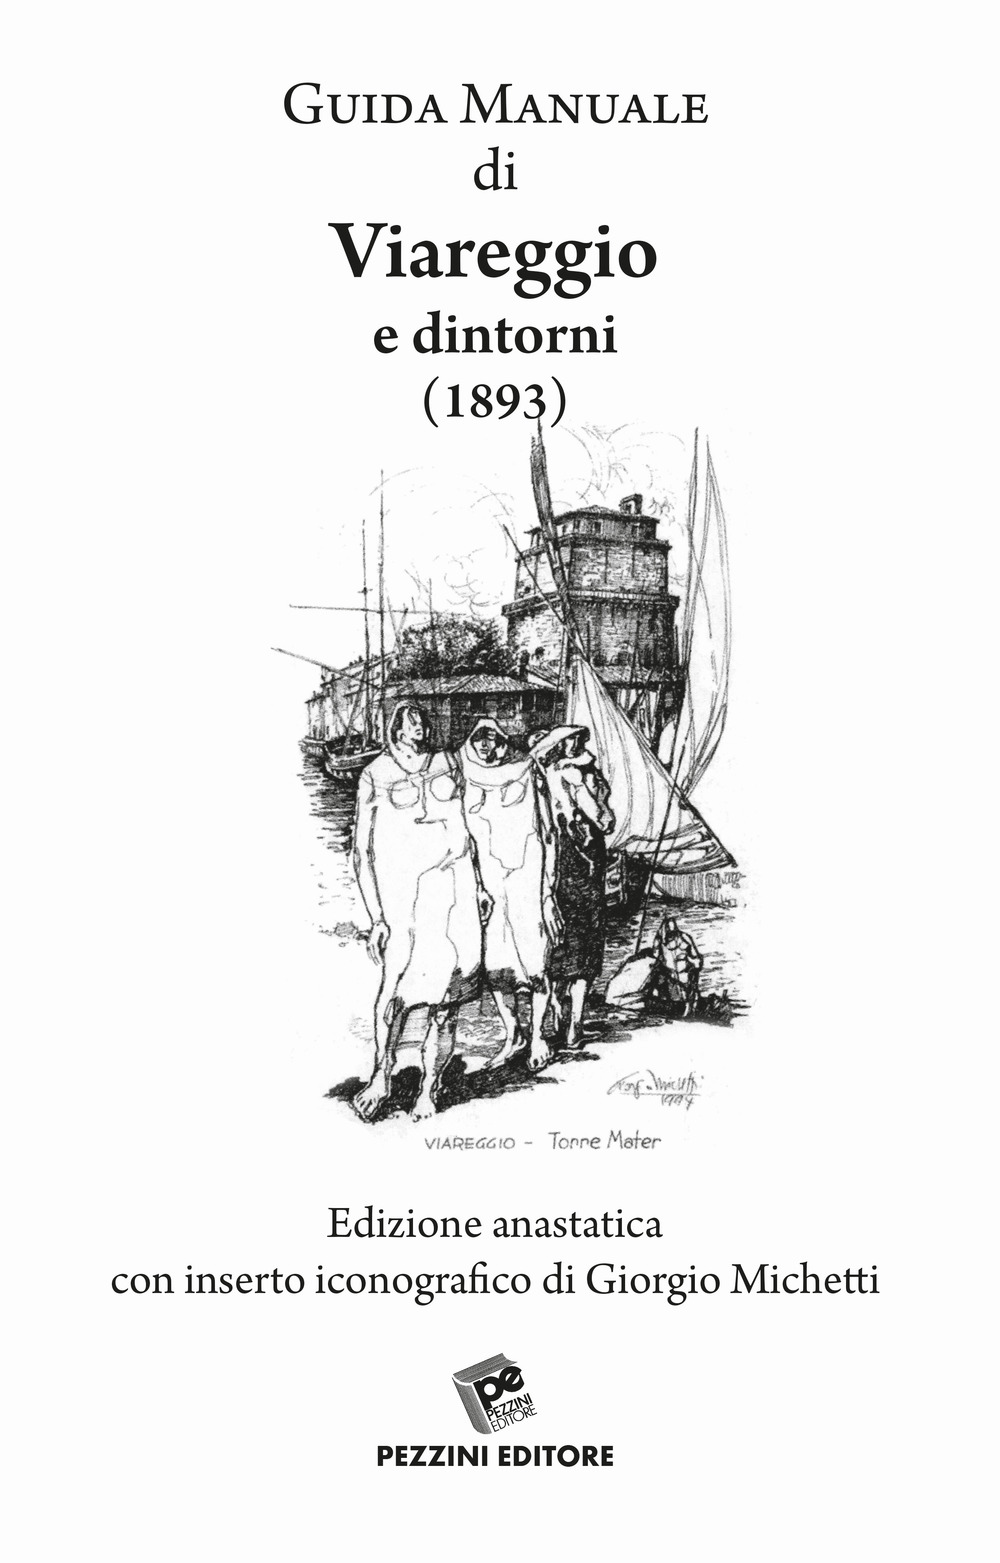 Guida manuale di Viareggio e dintorni (rist. anast. 1893)